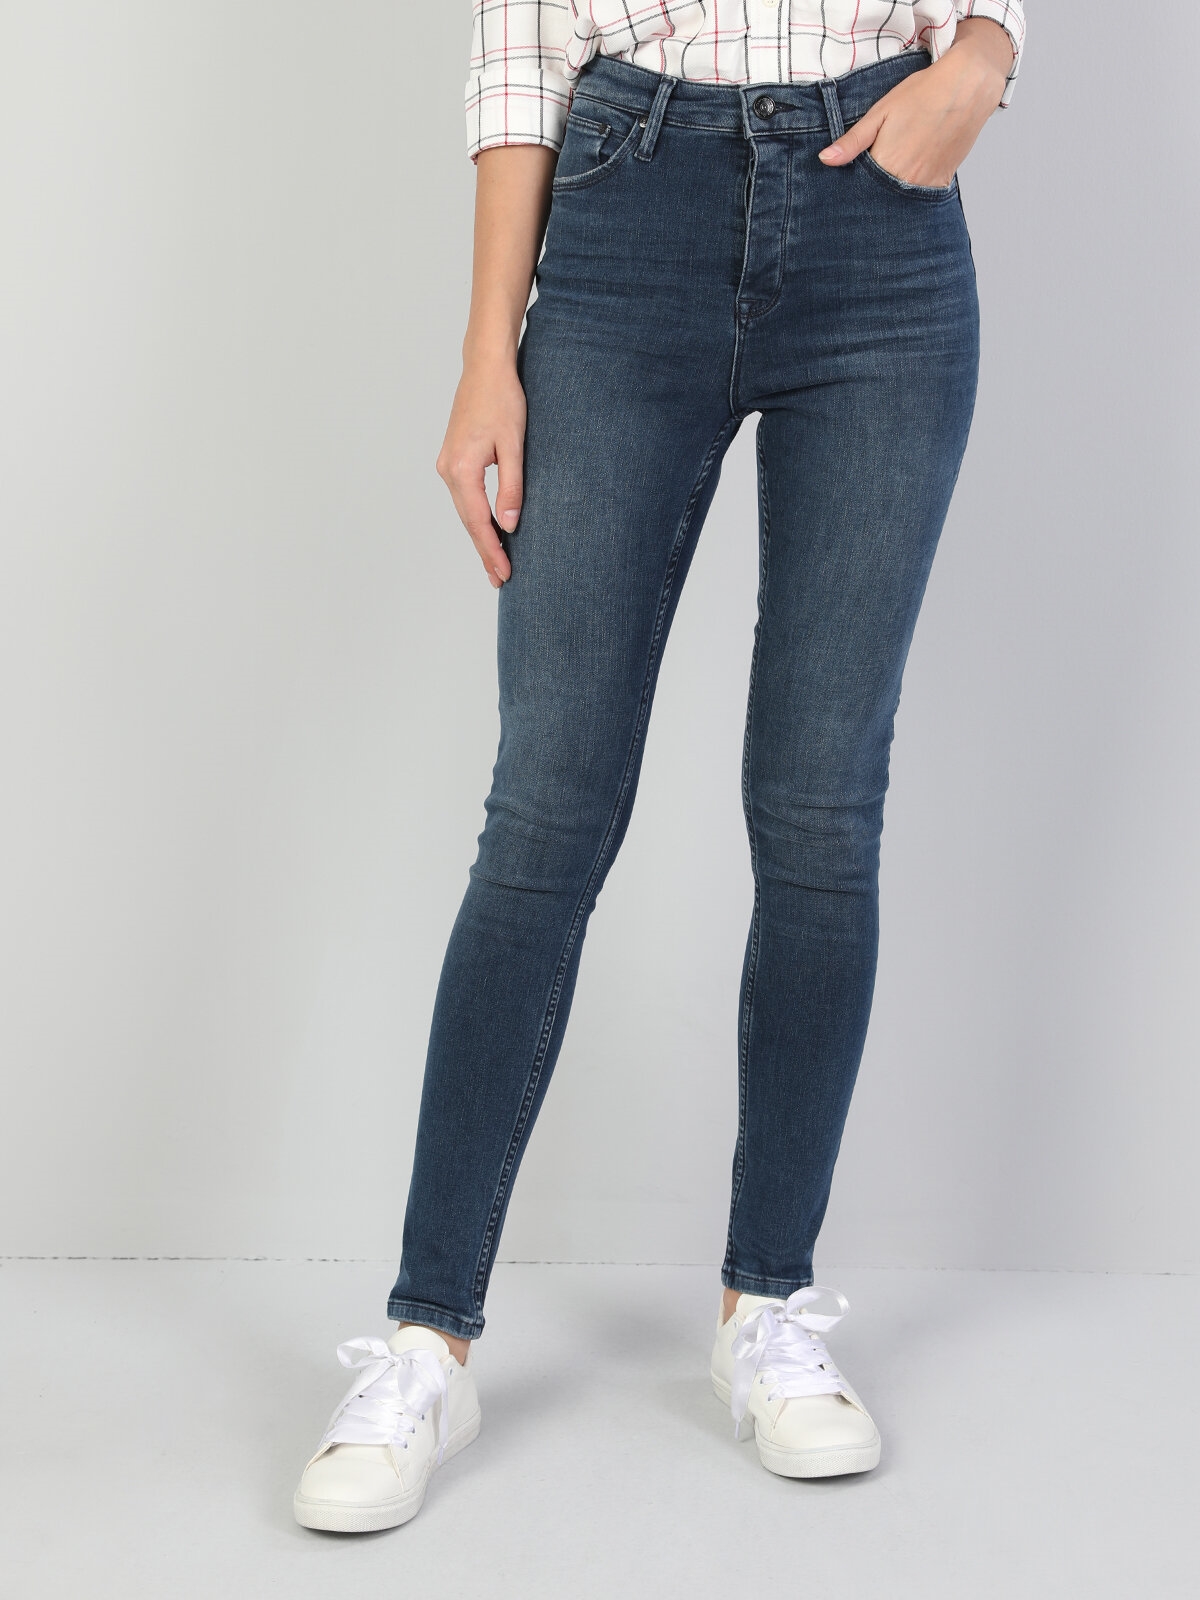 Модные джинсы мом: фото, с чем носить, модели, тренды, новинки